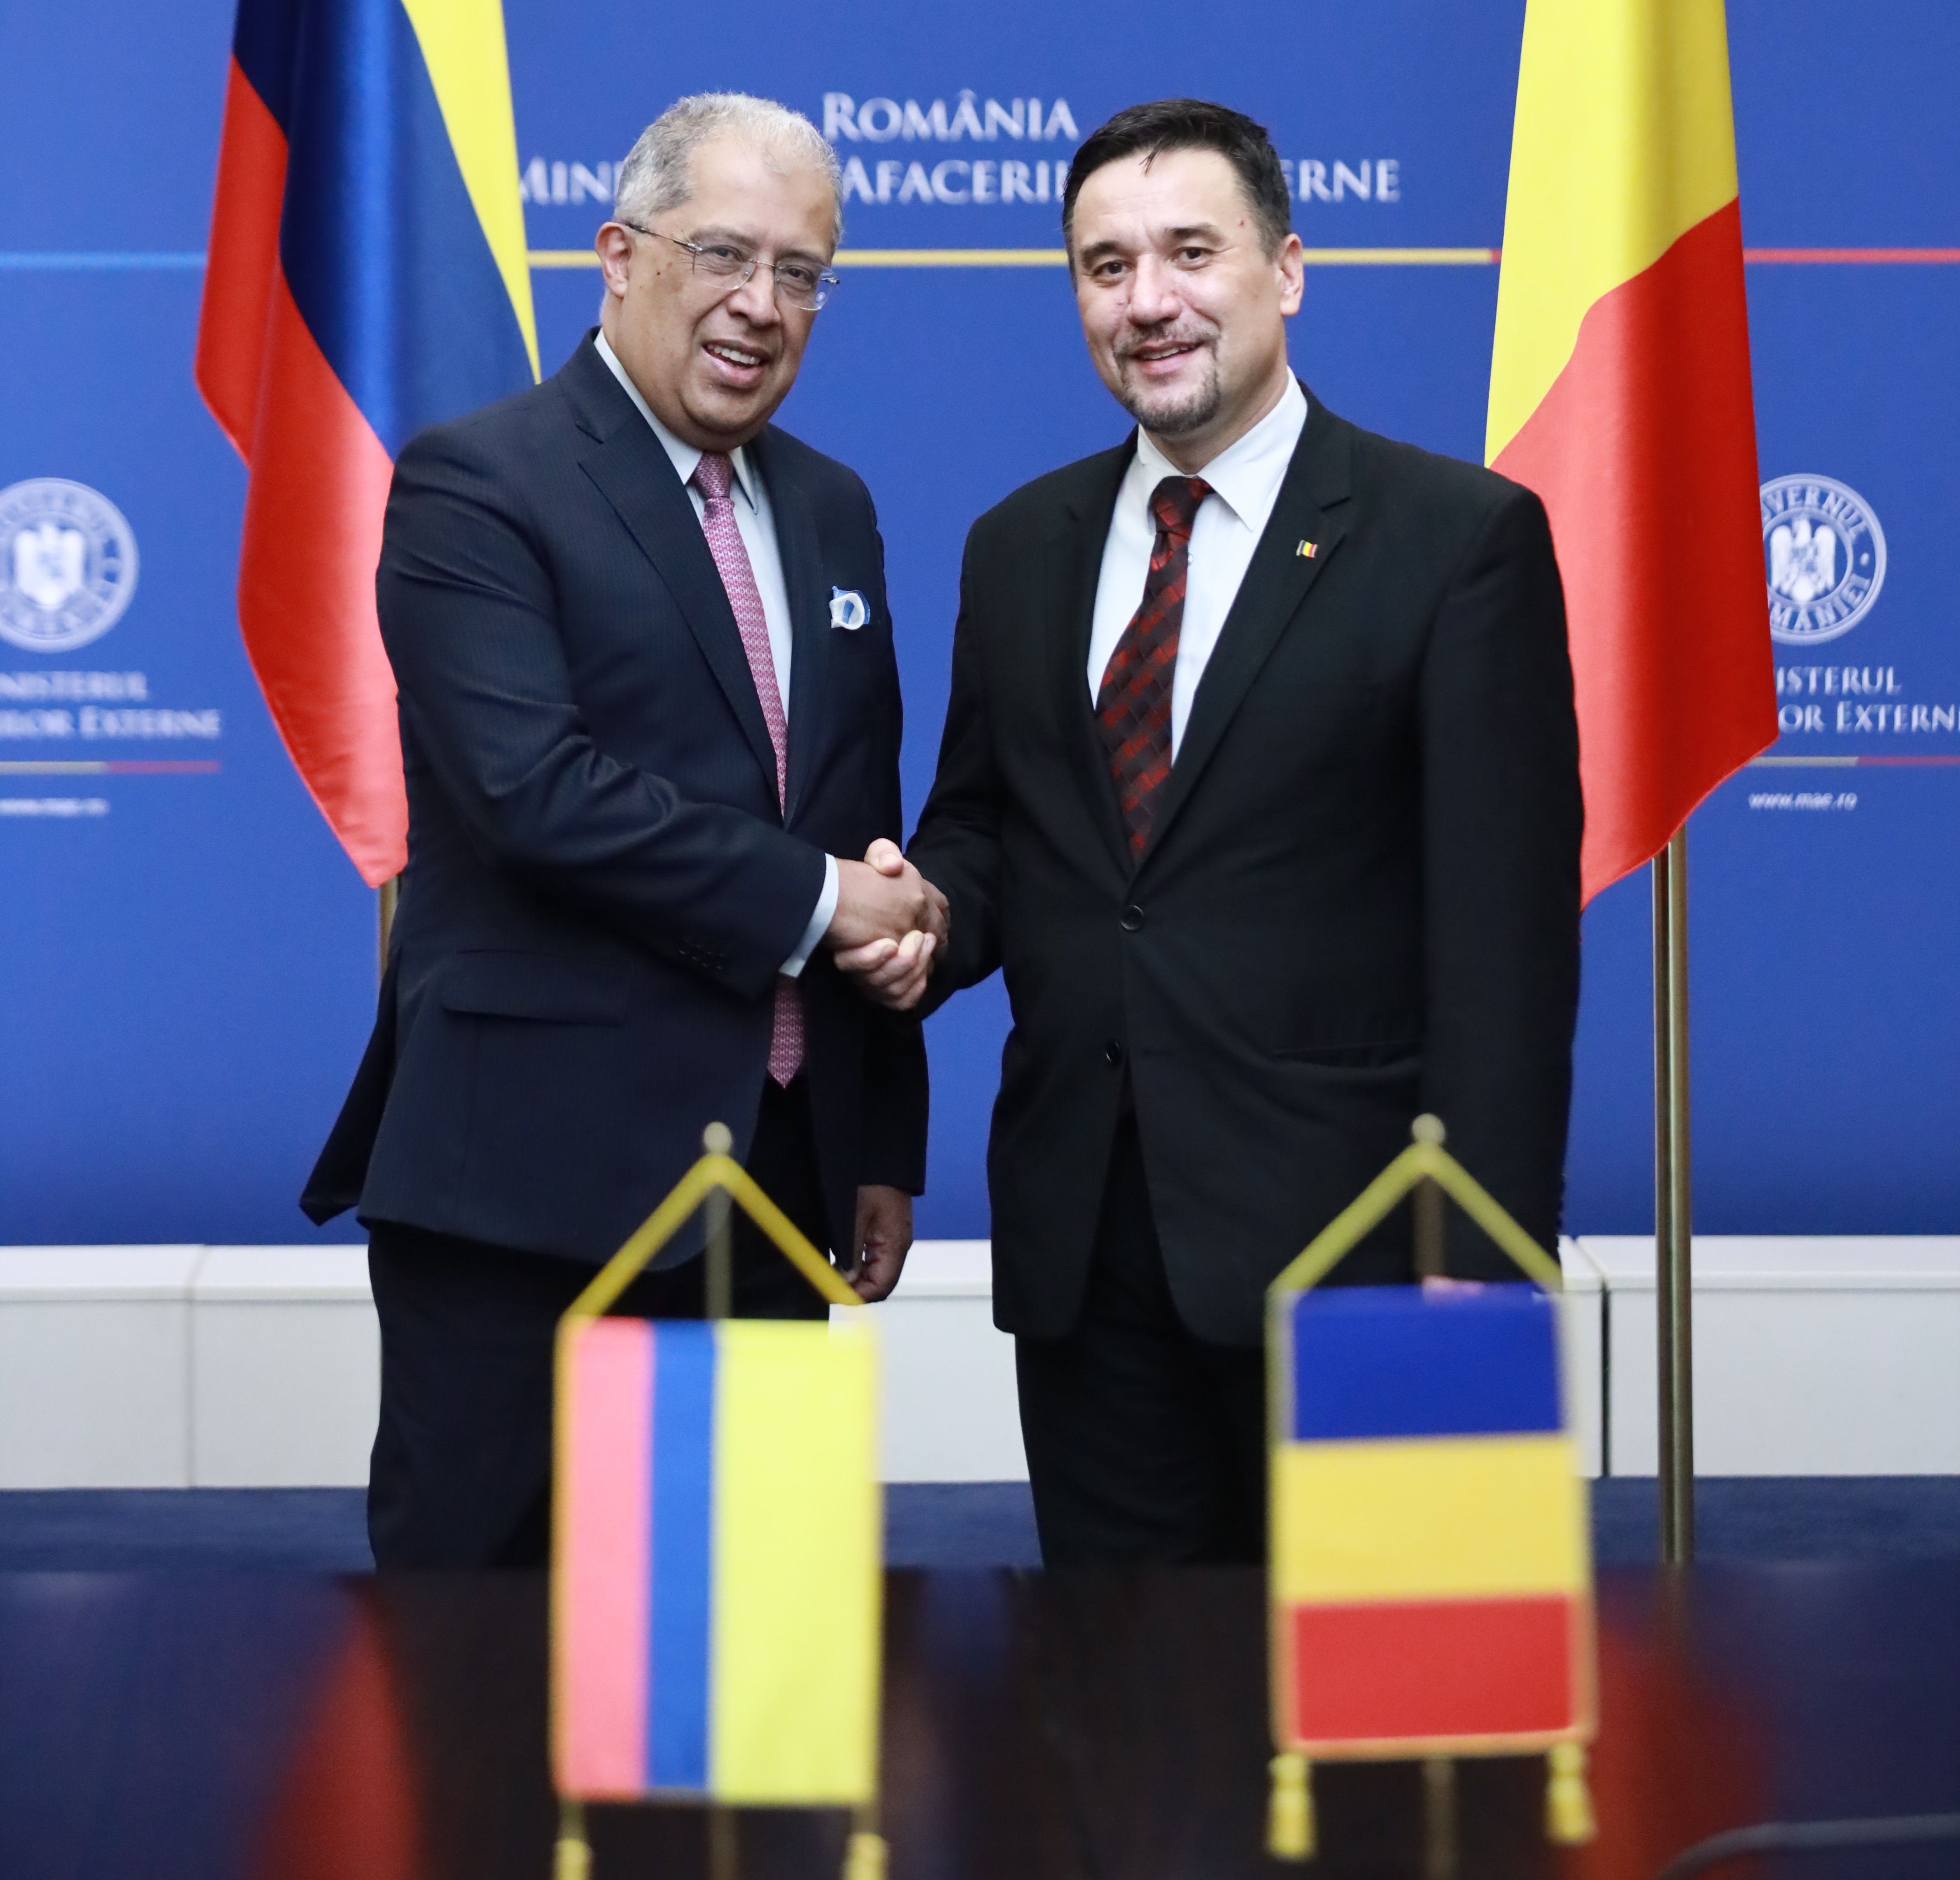 Colombia y Rumanía fortalecieron sus relaciones bilaterales en el encuentro de Consultas Políticas que se realizó en Bucarest